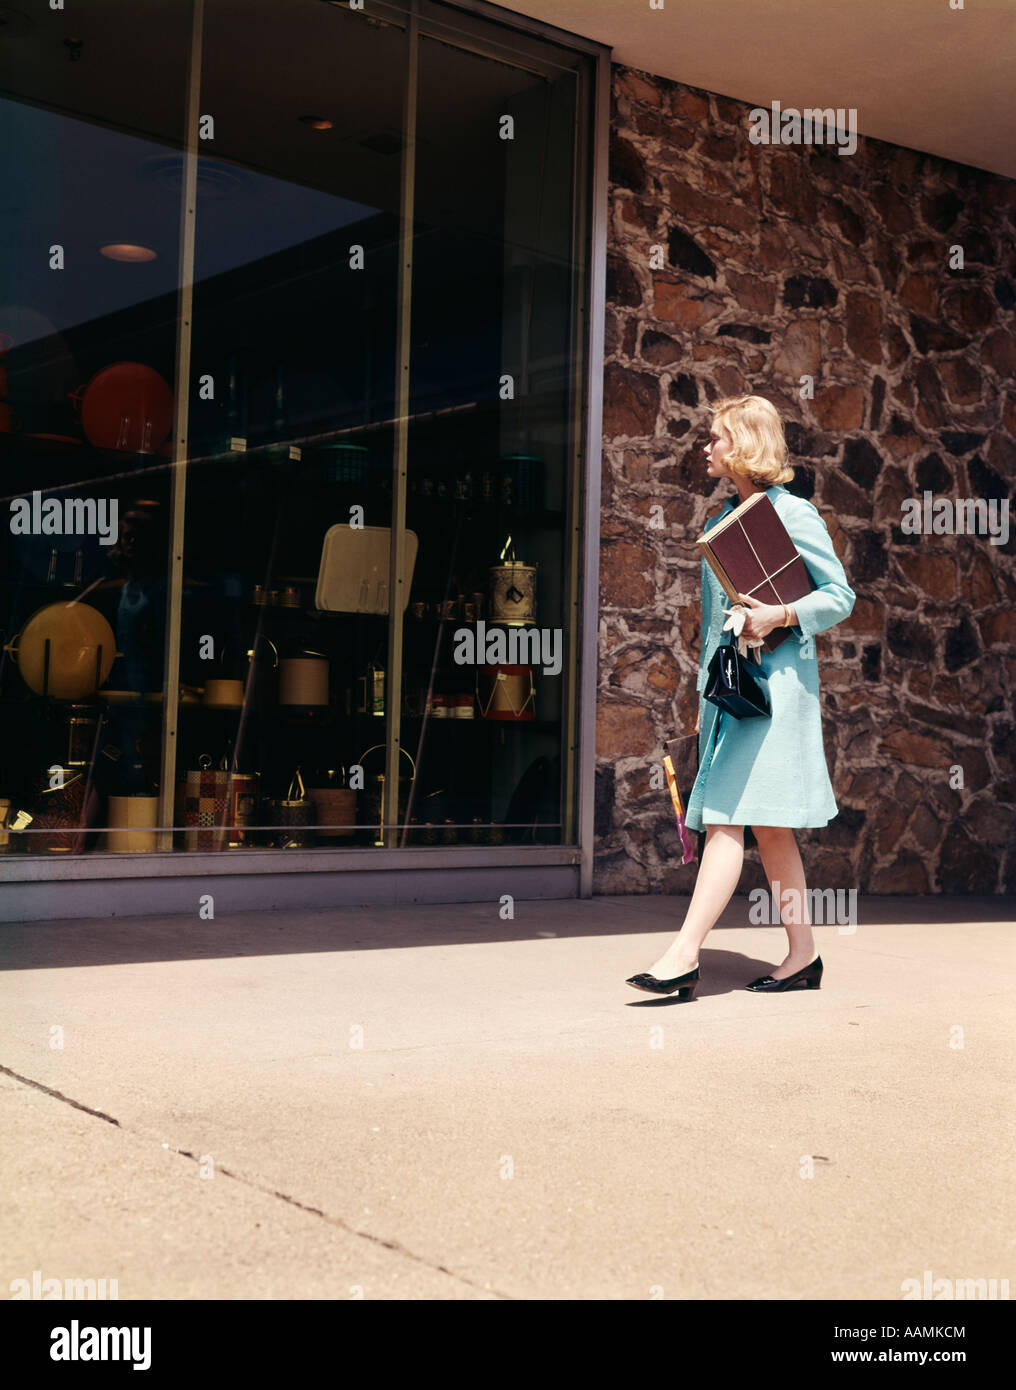 1960 1960 Femme blonde BLUE COAT WALKING DOWN STREET WINDOW SHOPPING À LA BOUTIQUE DE VENTE AU DÉTAIL EN MAGASIN WINDOWS RETRO Banque D'Images